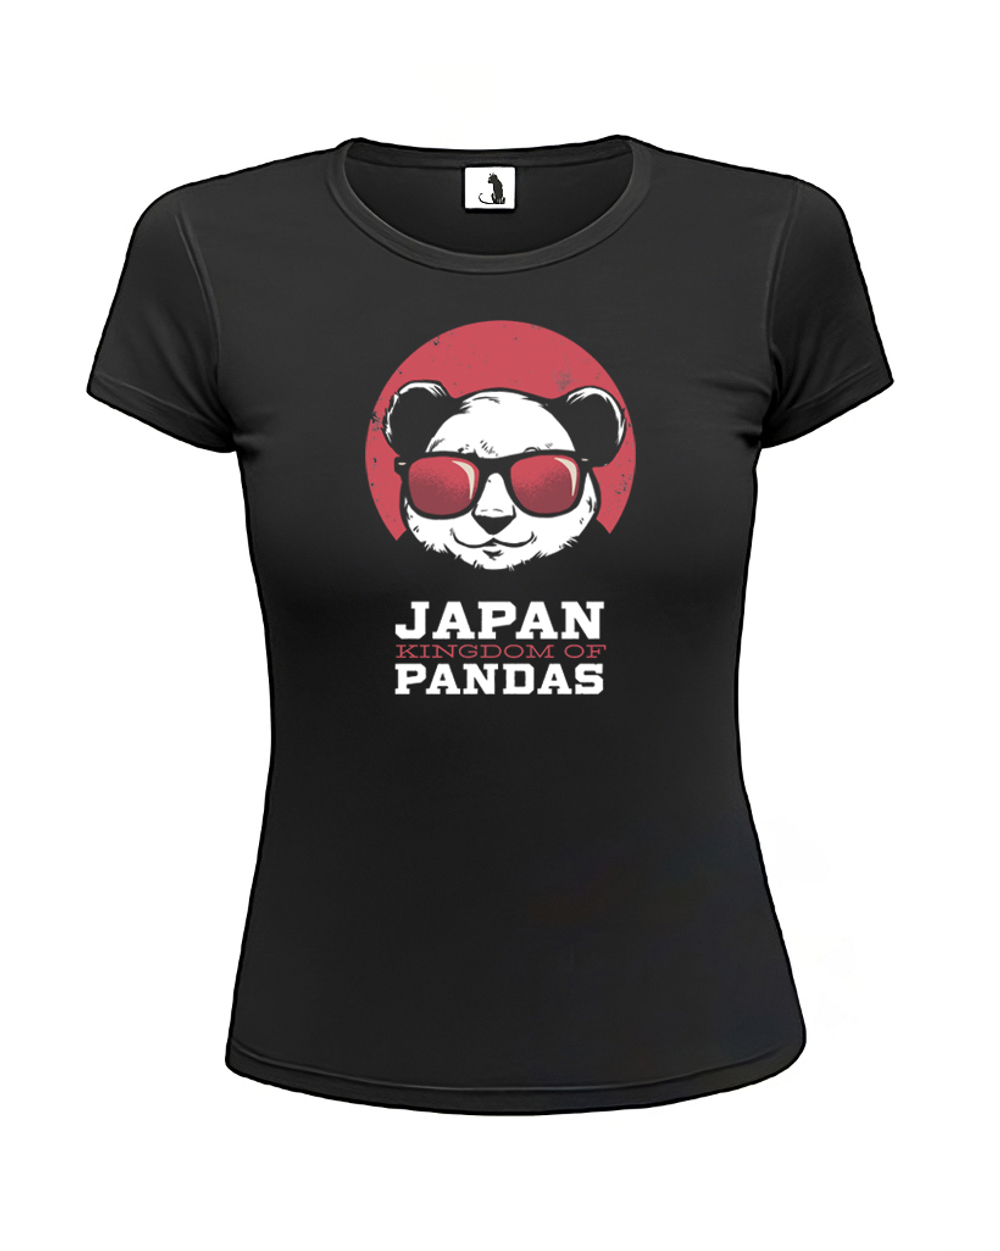 Футболка Япония - королевство панд женская приталенная черная